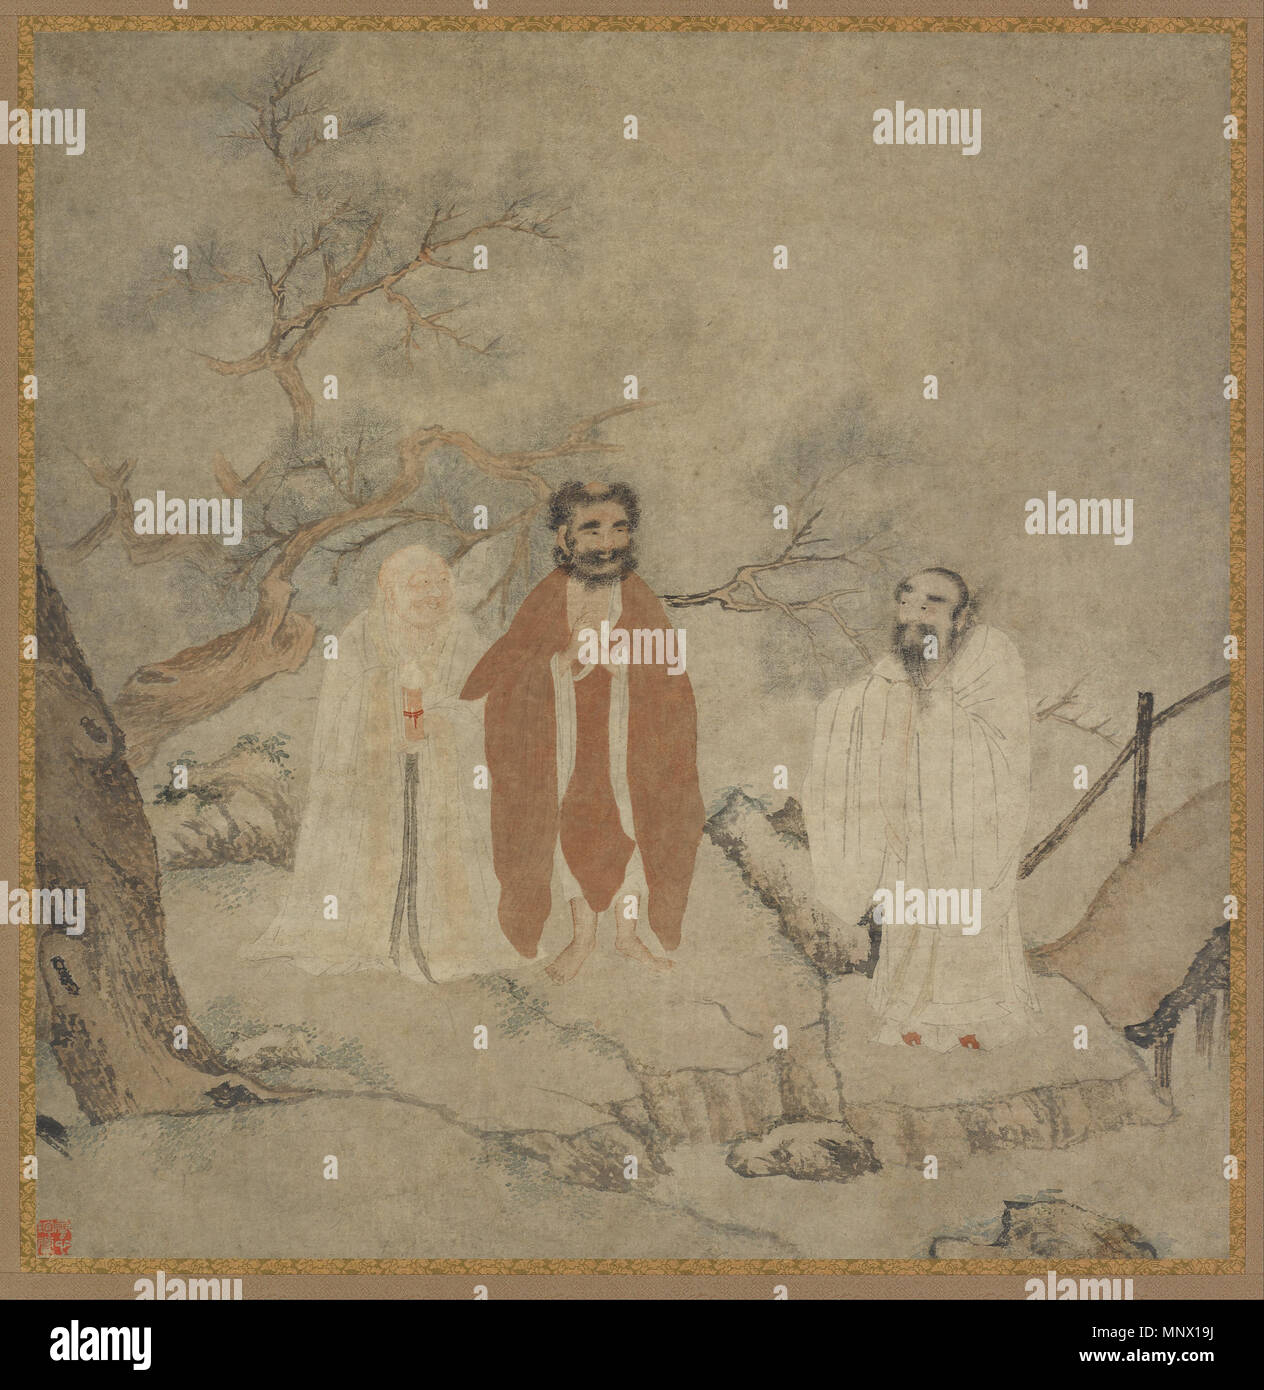 Sakyamuni, Lao Tseu, Confucius et à partir de 1368 jusqu'à 1644. 1086, Sakyamuni, Lao-tseu et Confucius - Google Art Project Banque D'Images